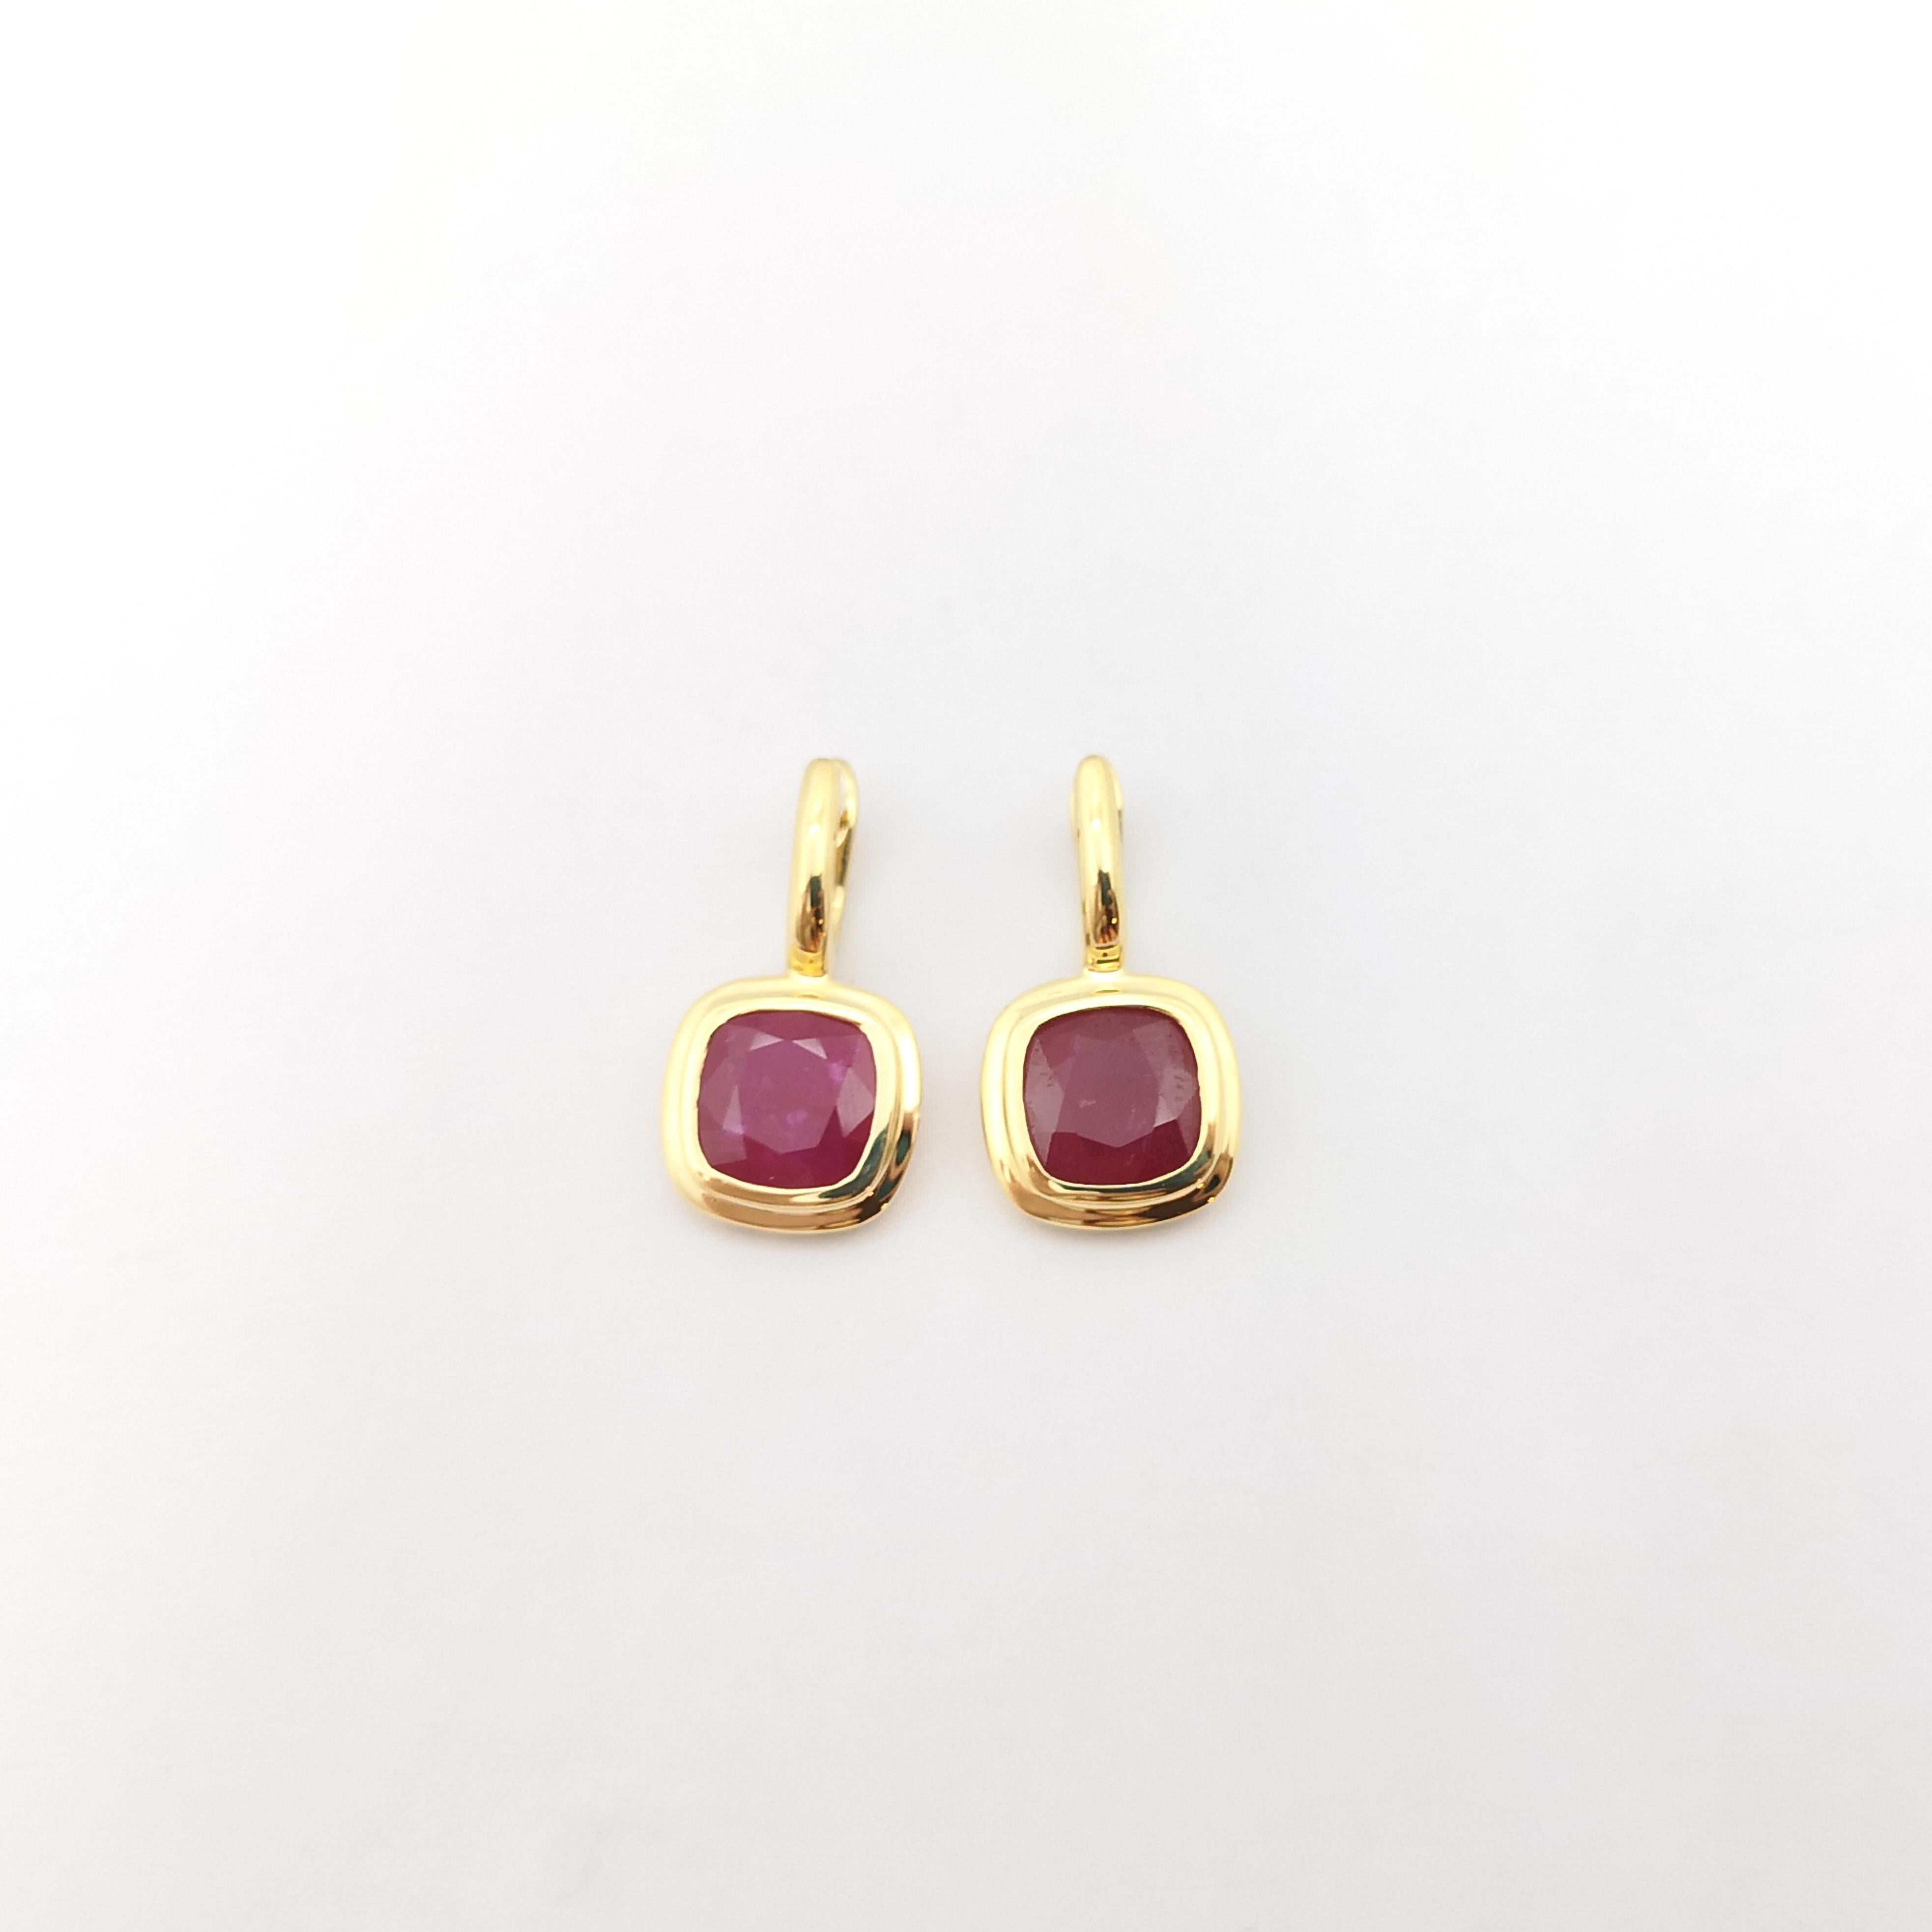 Cushion Cut Ruby Earrings set in 18K Gold Settings For Sale